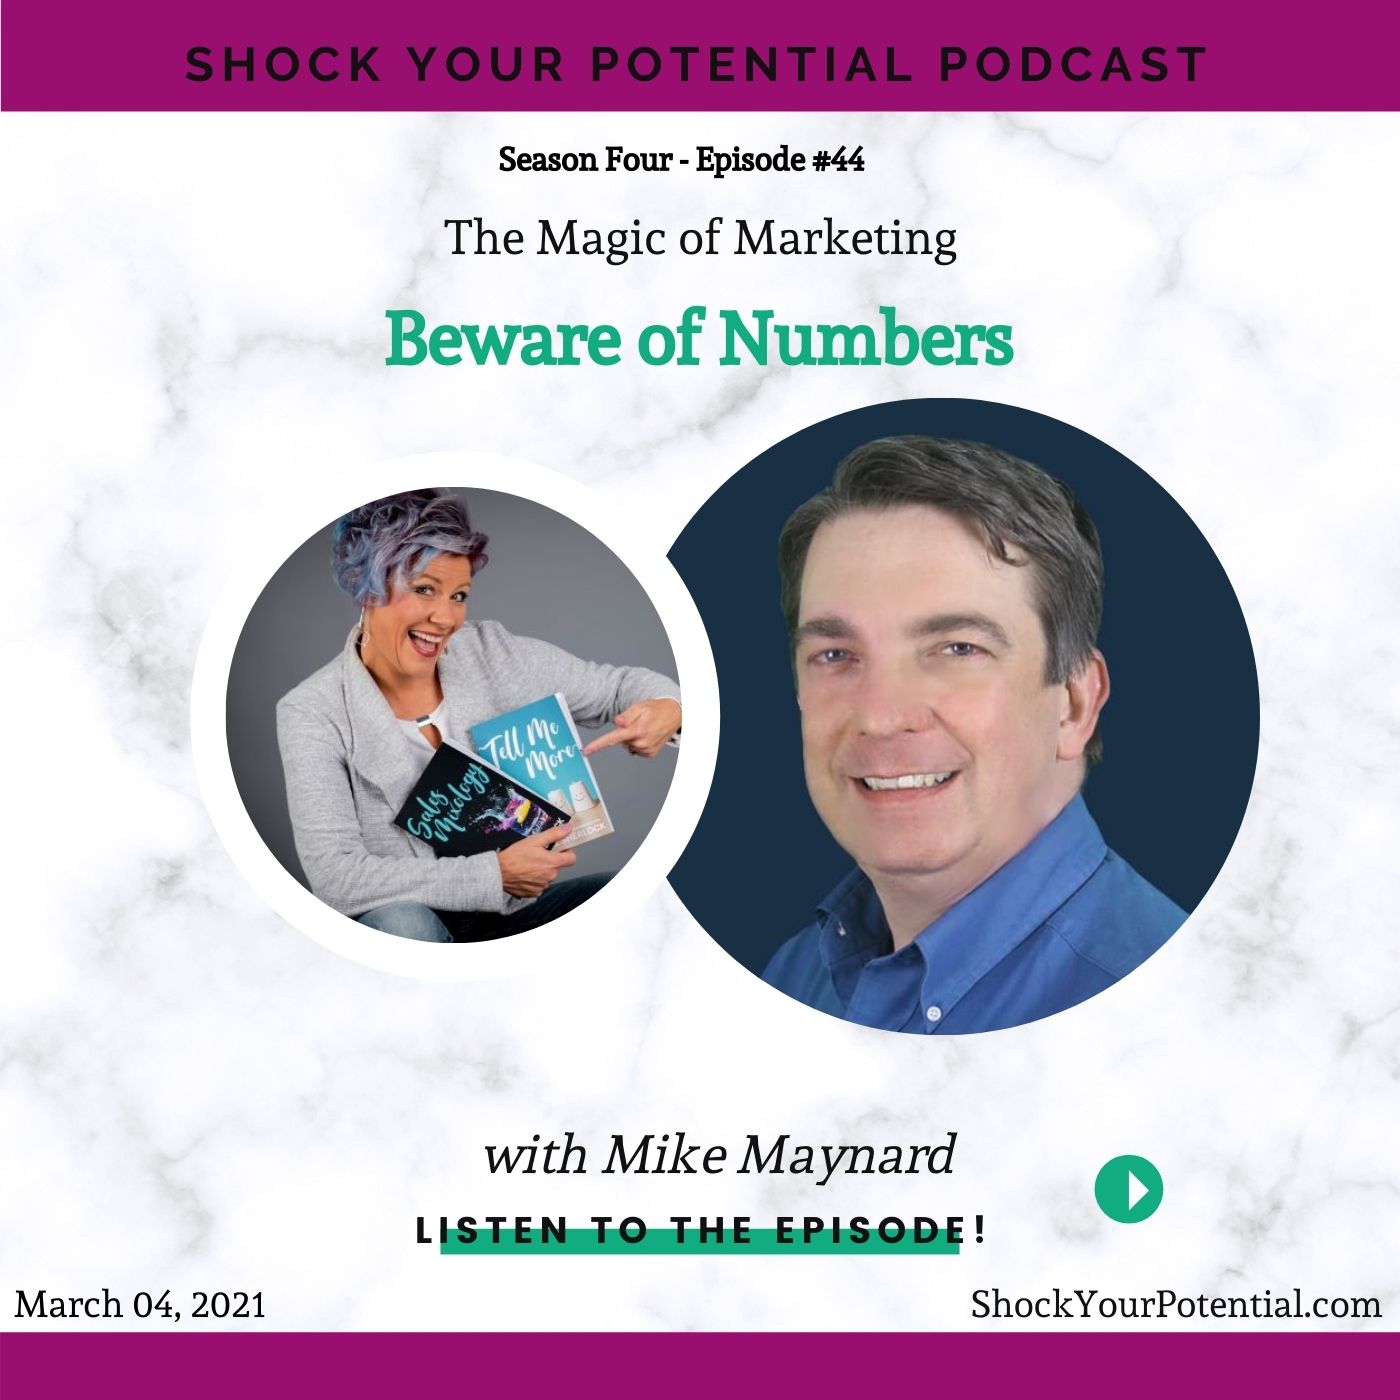 Beware of Numbers – Mike Maynard